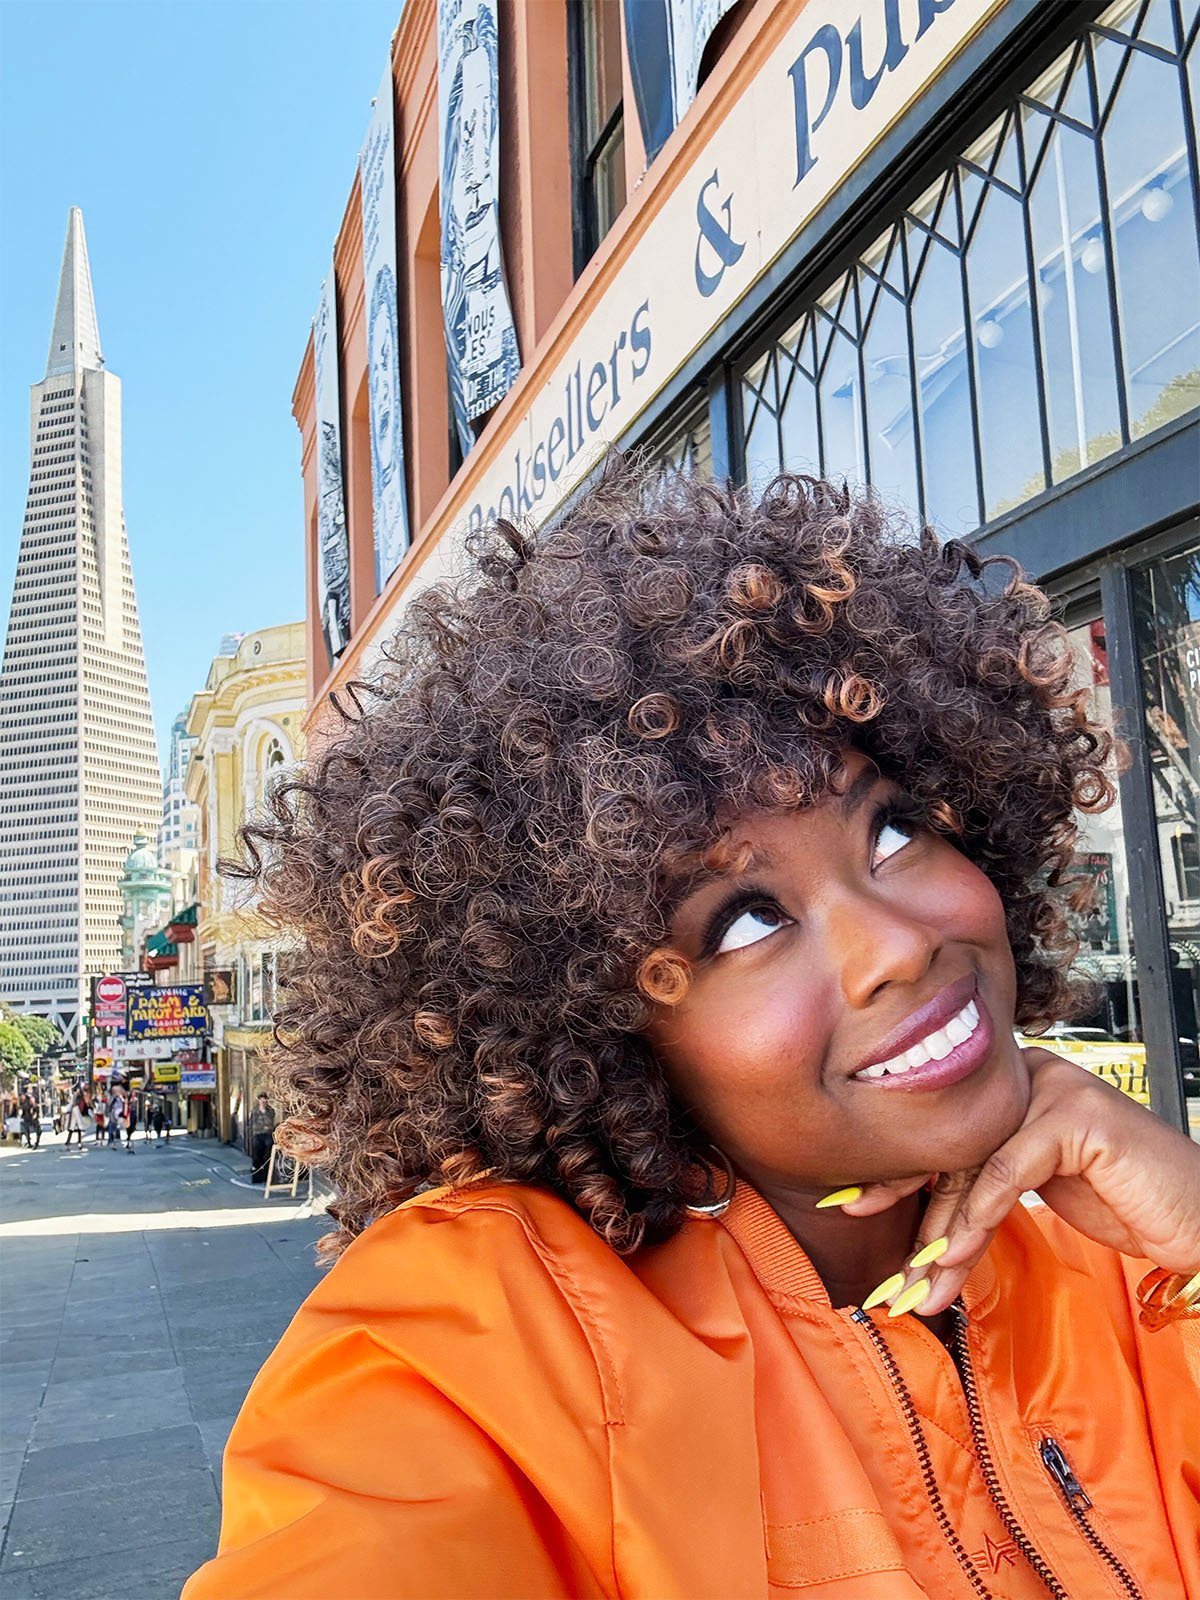 Una mujer de pelo rizado y chaqueta naranja sonríe mientras mira hacia arriba.  Está parada en una calle de la ciudad con un rascacielos alto y puntiagudo al fondo.  También se ve la fachada de una librería.